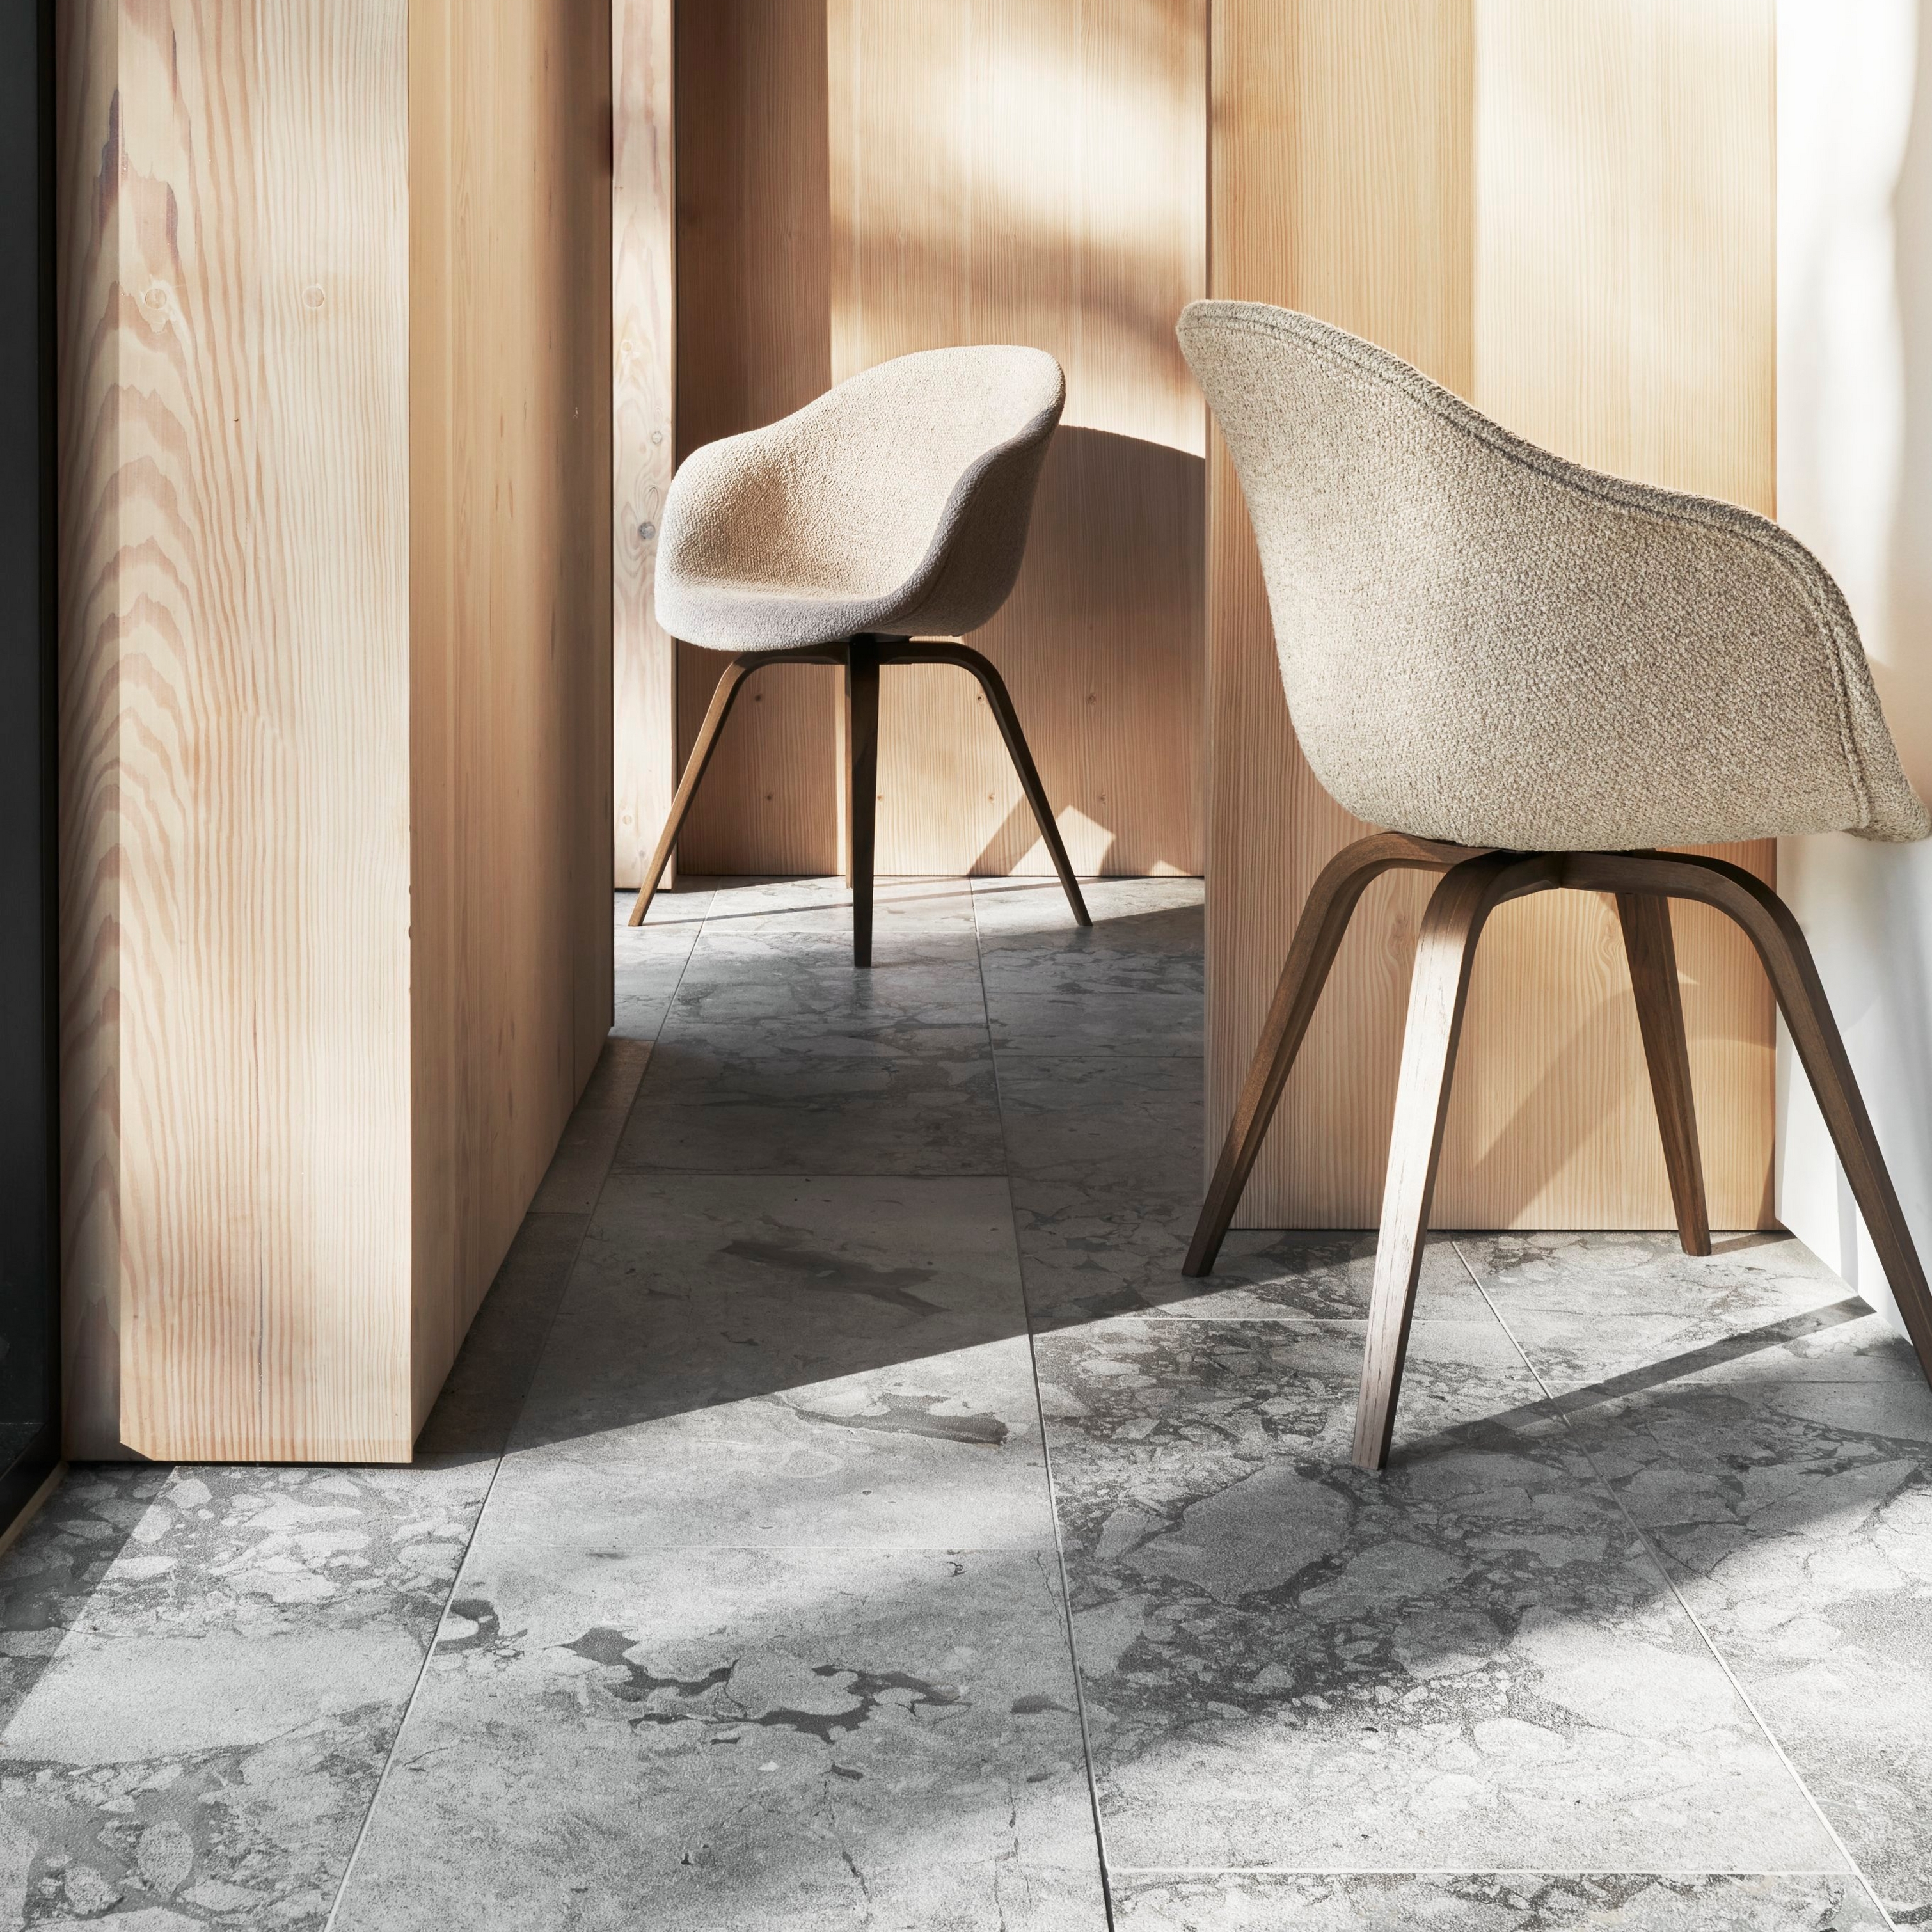 Napfényes belső tér két Hauge székkel, faborítású falakkal és márványpadlóval.